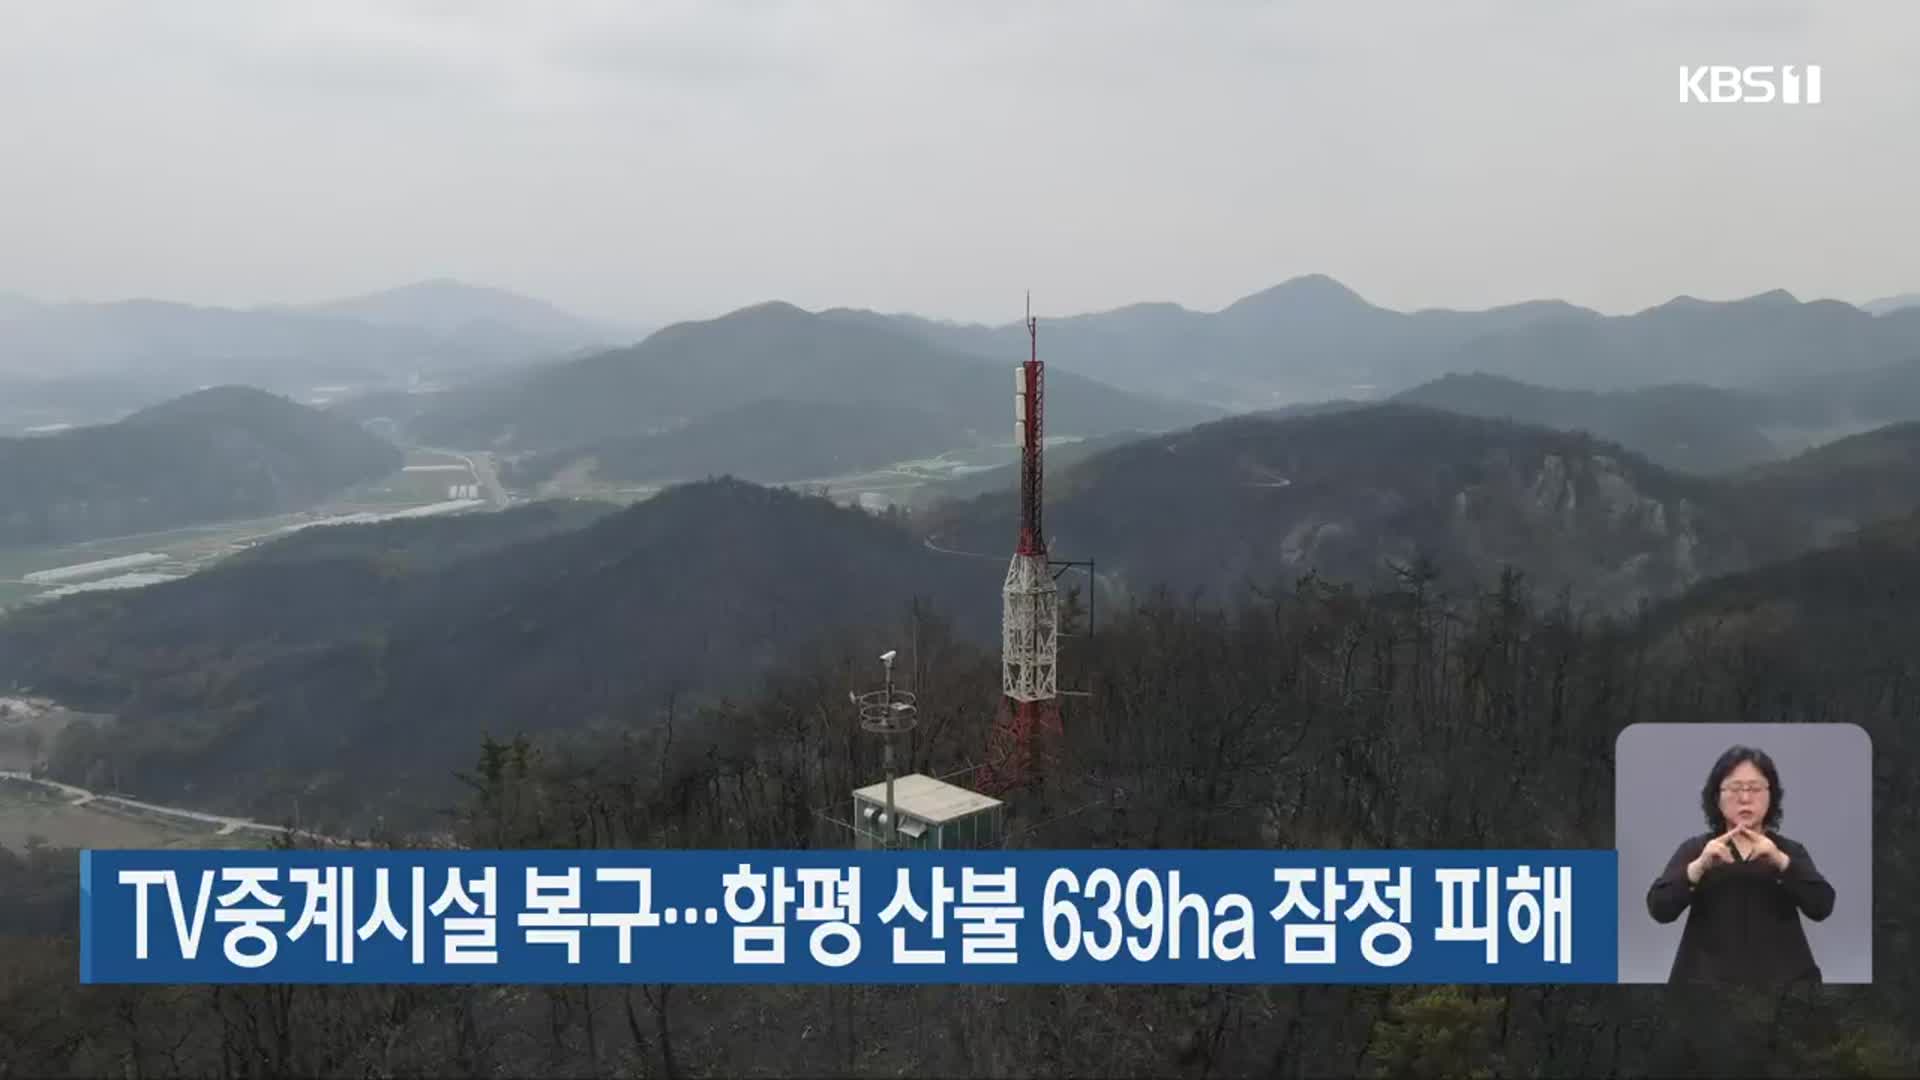 TV중계시설 복구…함평 산불 639ha 잠정 피해